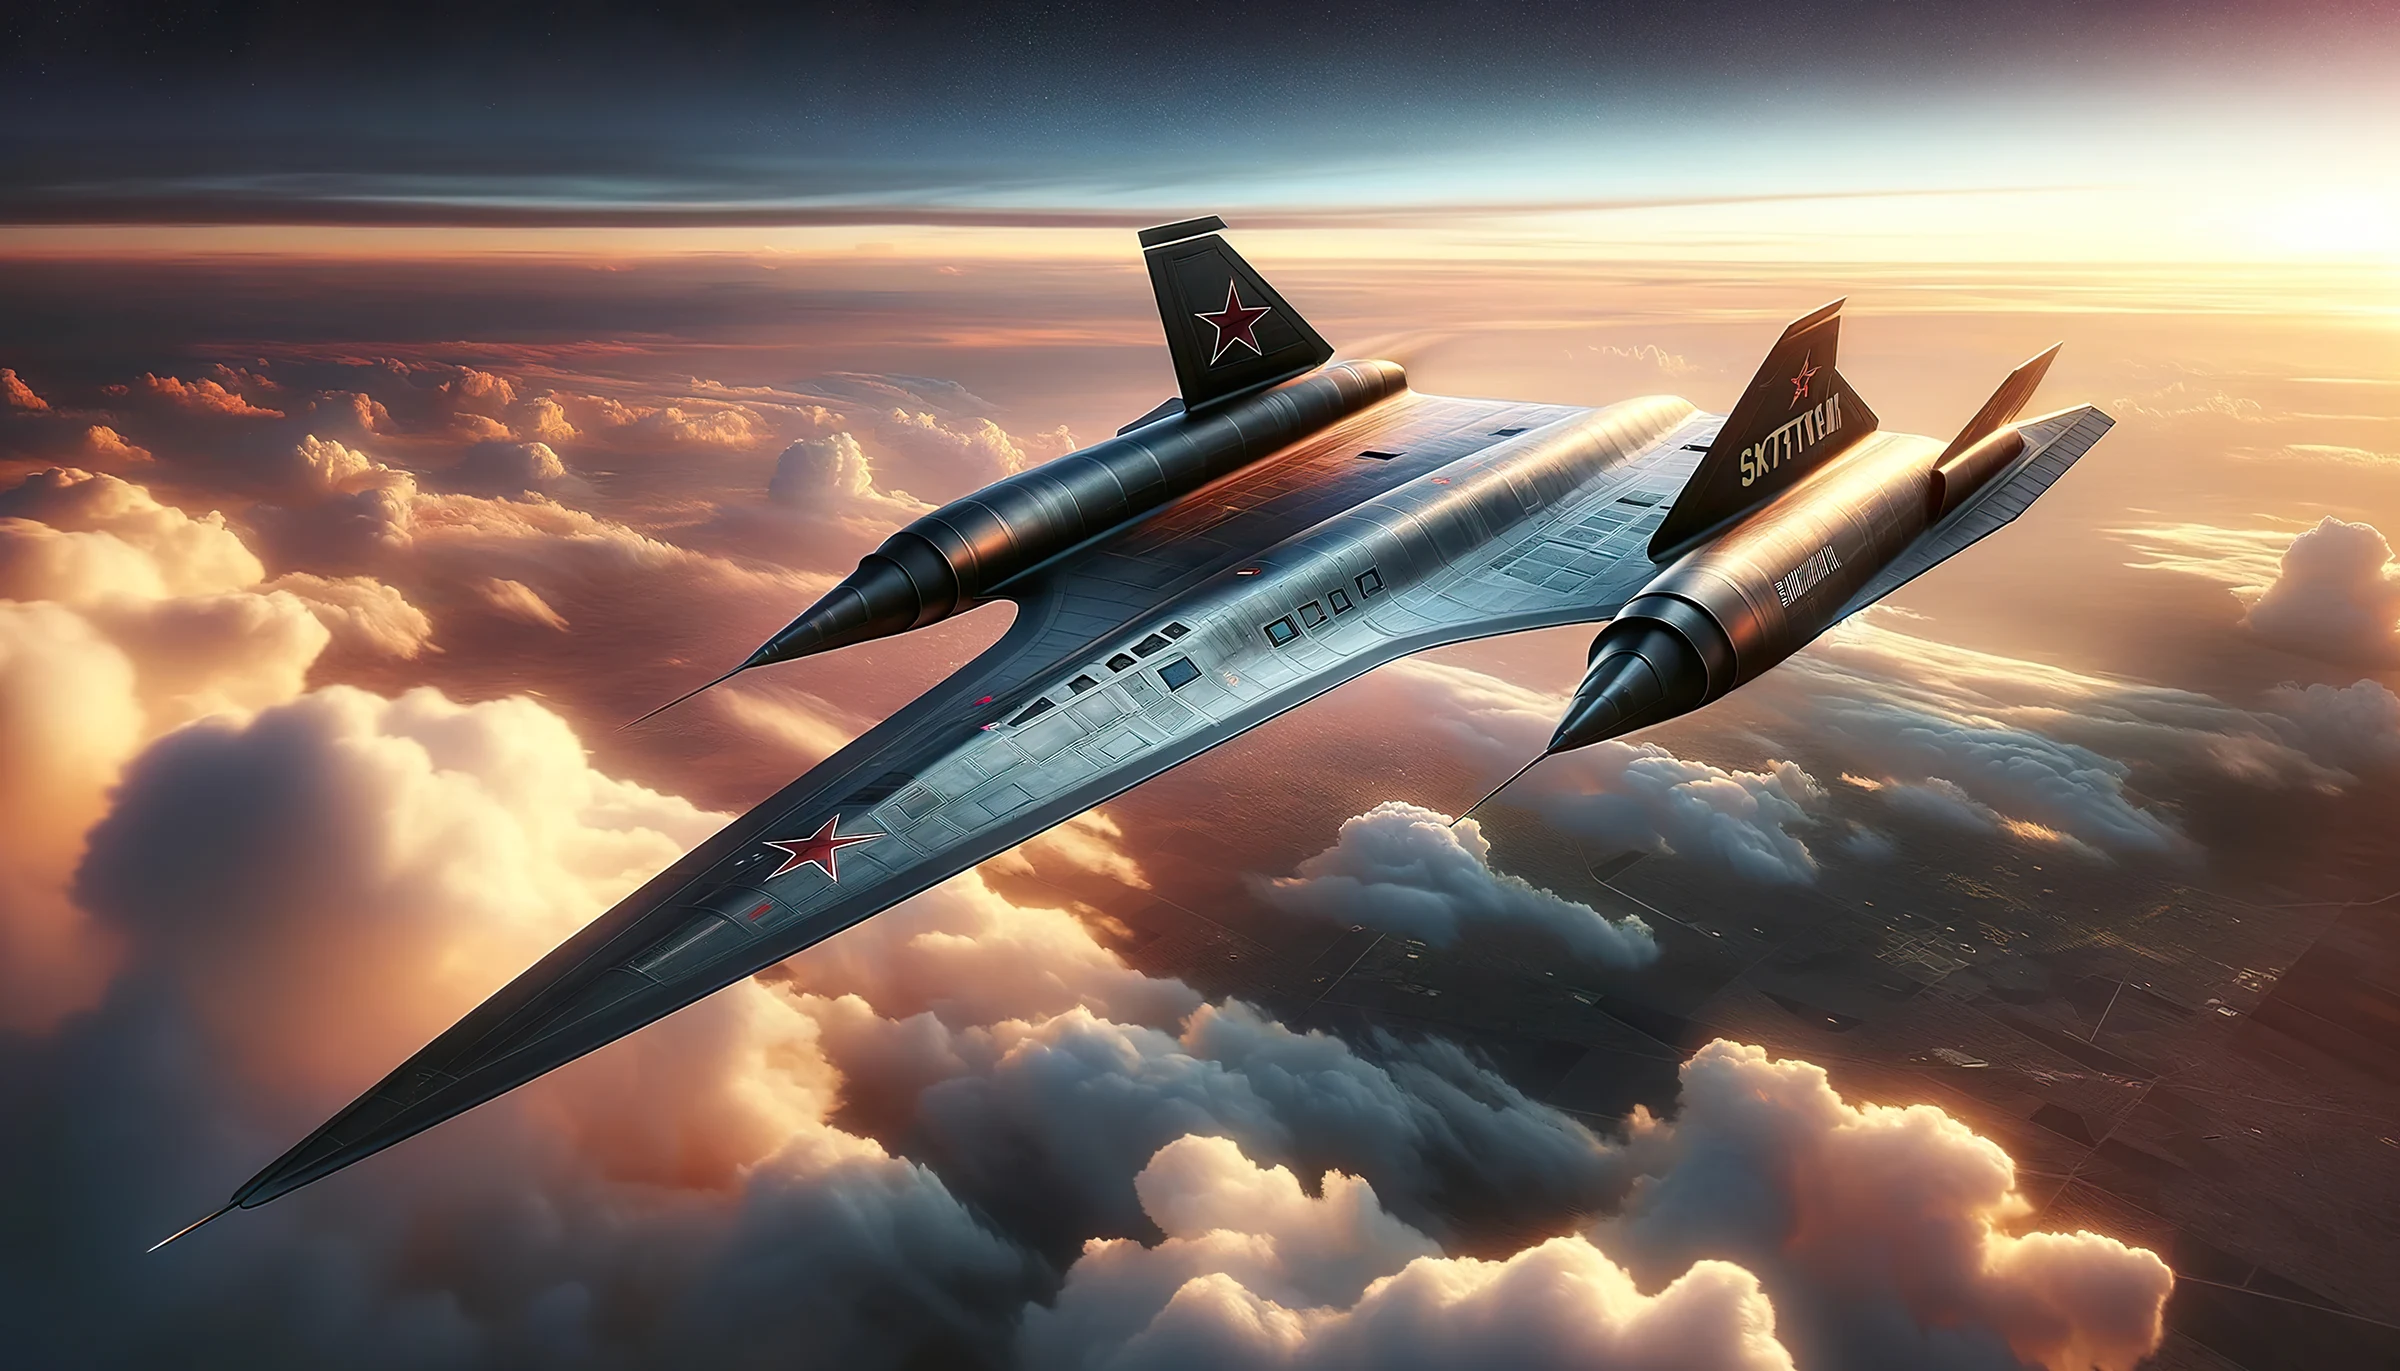 RSR: El intento soviético por replicar el SR-71 Blackbird